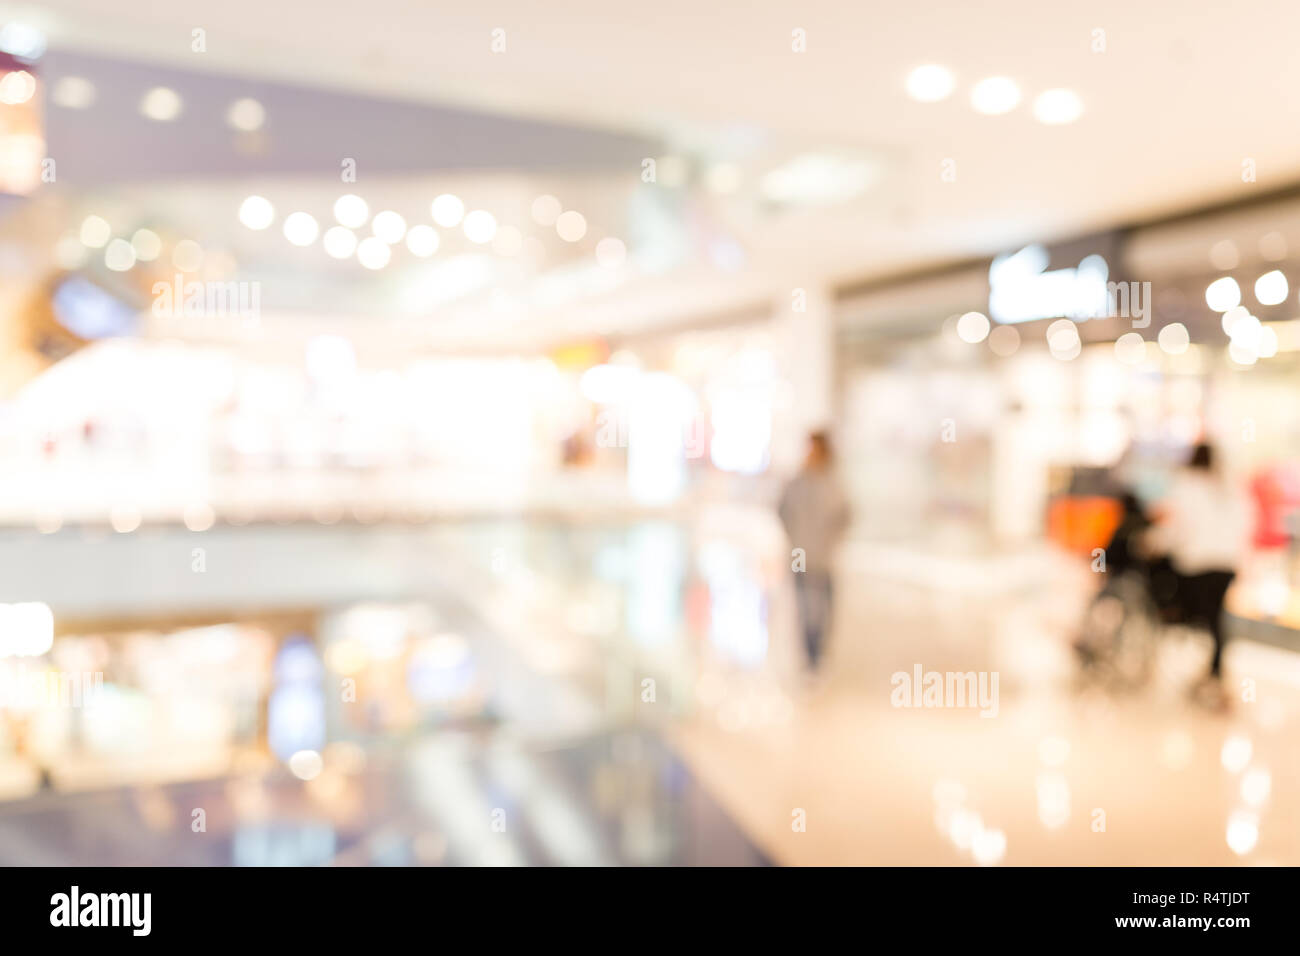 Cửa hàng mua sắm (Shopping mall): Cửa hàng mua sắm luôn là điểm đến hấp dẫn cho những ai muốn tận hưởng không khí mua sắm sôi động và thỏa sức lựa chọn những món đồ yêu thích. Bạn có muốn khám phá những cửa hàng mua sắm đẳng cấp, hiện đại và sôi động nhất hiện nay? Hãy cùng xem những hình ảnh đẹp và đắm chìm trong không gian mua sắm đầy sôi động nhé!